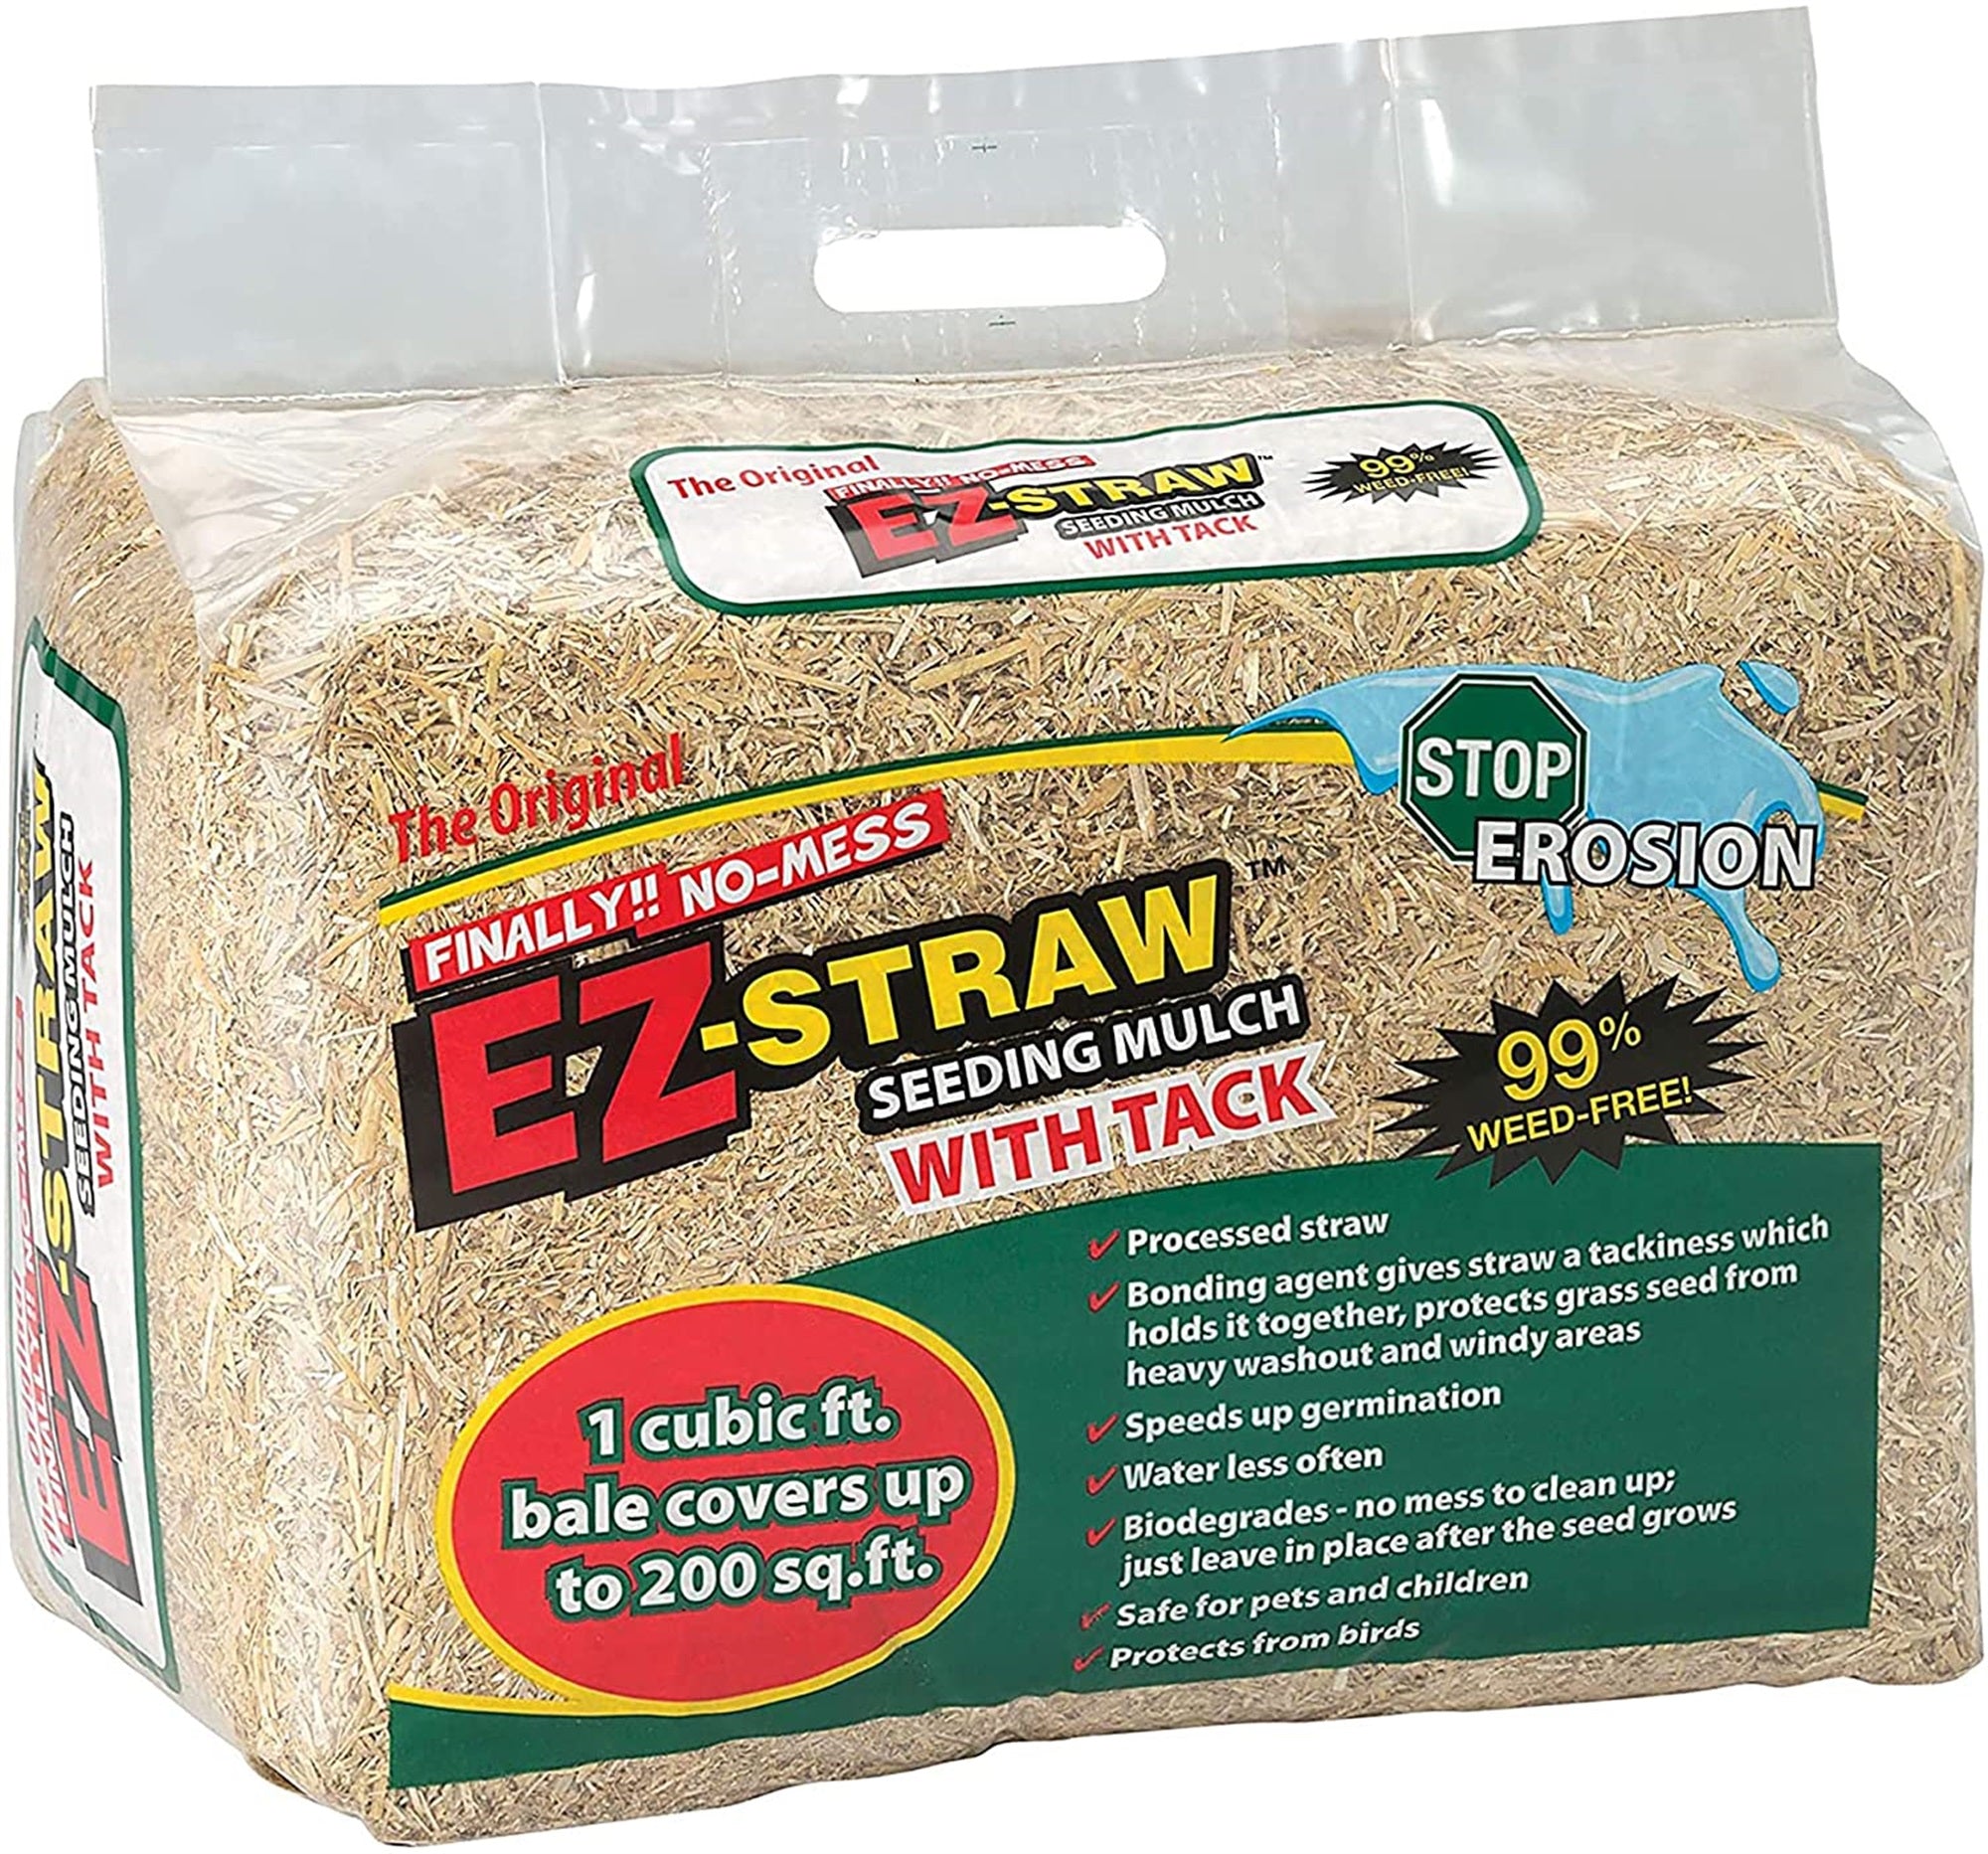 EZ-Straw Seeding Mulch with Tack, 11 lb